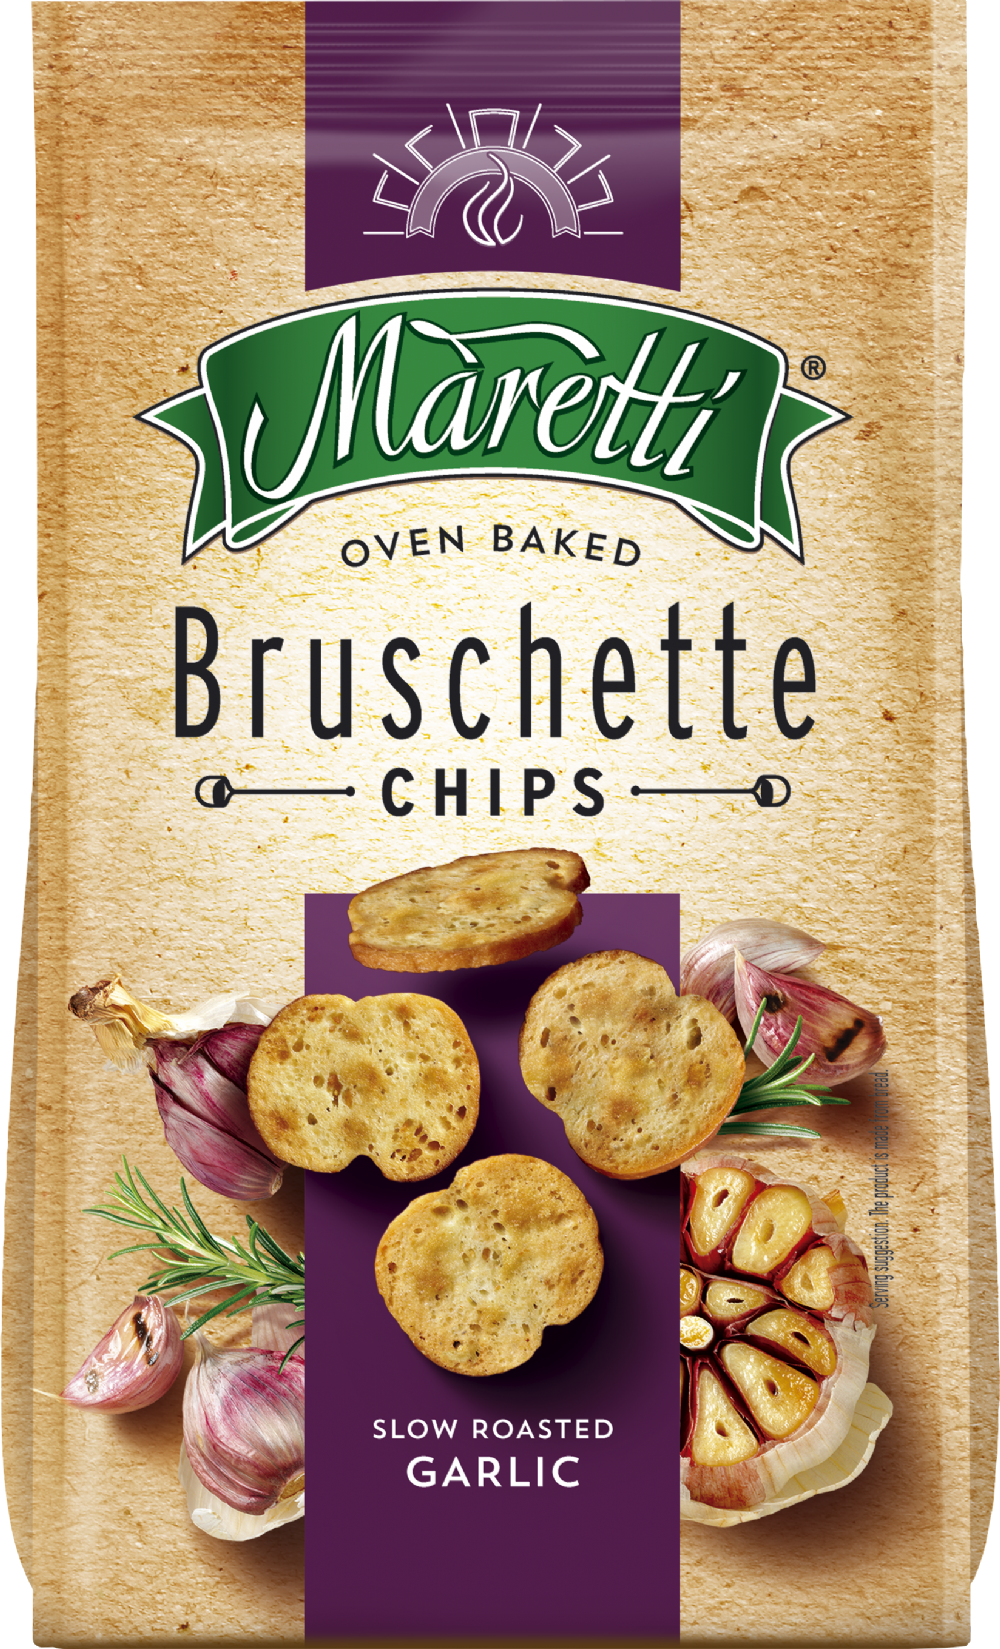 MARETTI Bruschette - Slow Roasted Garlic 70g